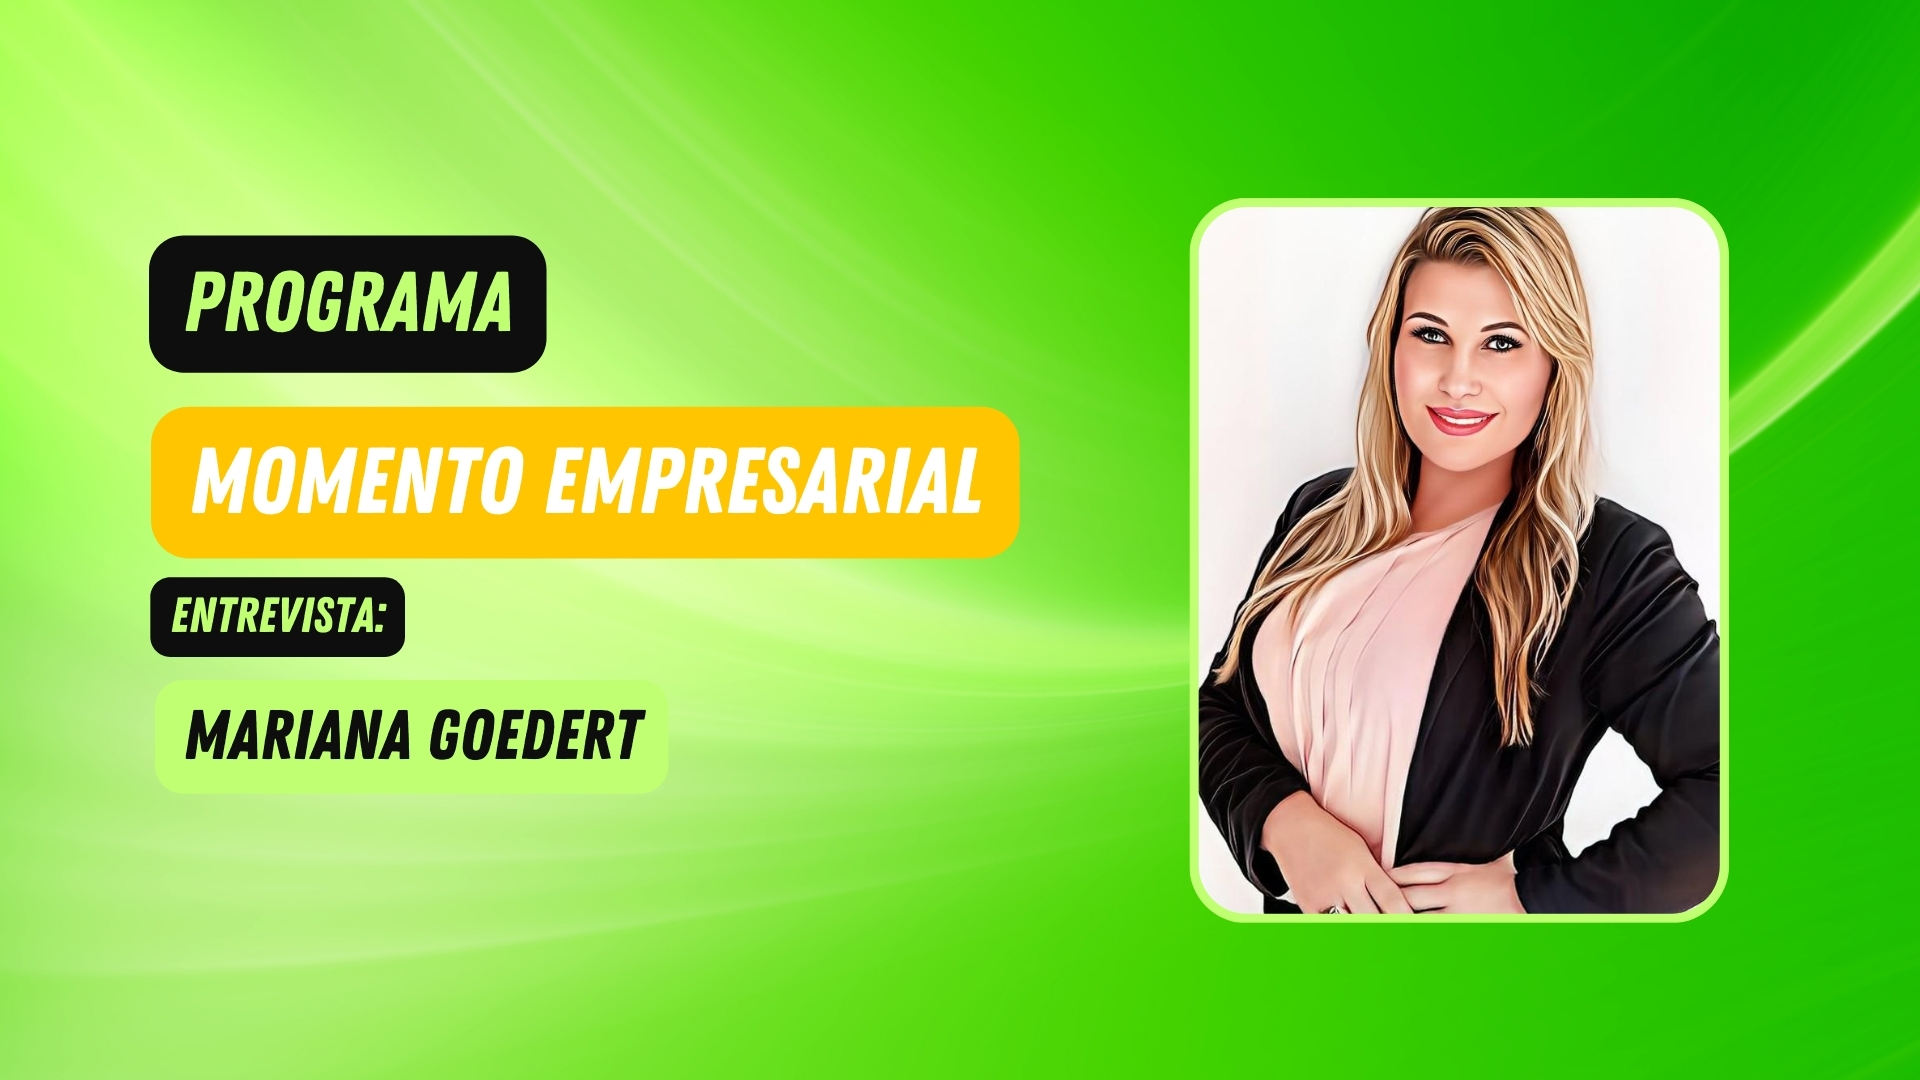 #MomentoEmpresarial | Entrevista Mariana Goedert - Recursos Humanos - News Rondônia